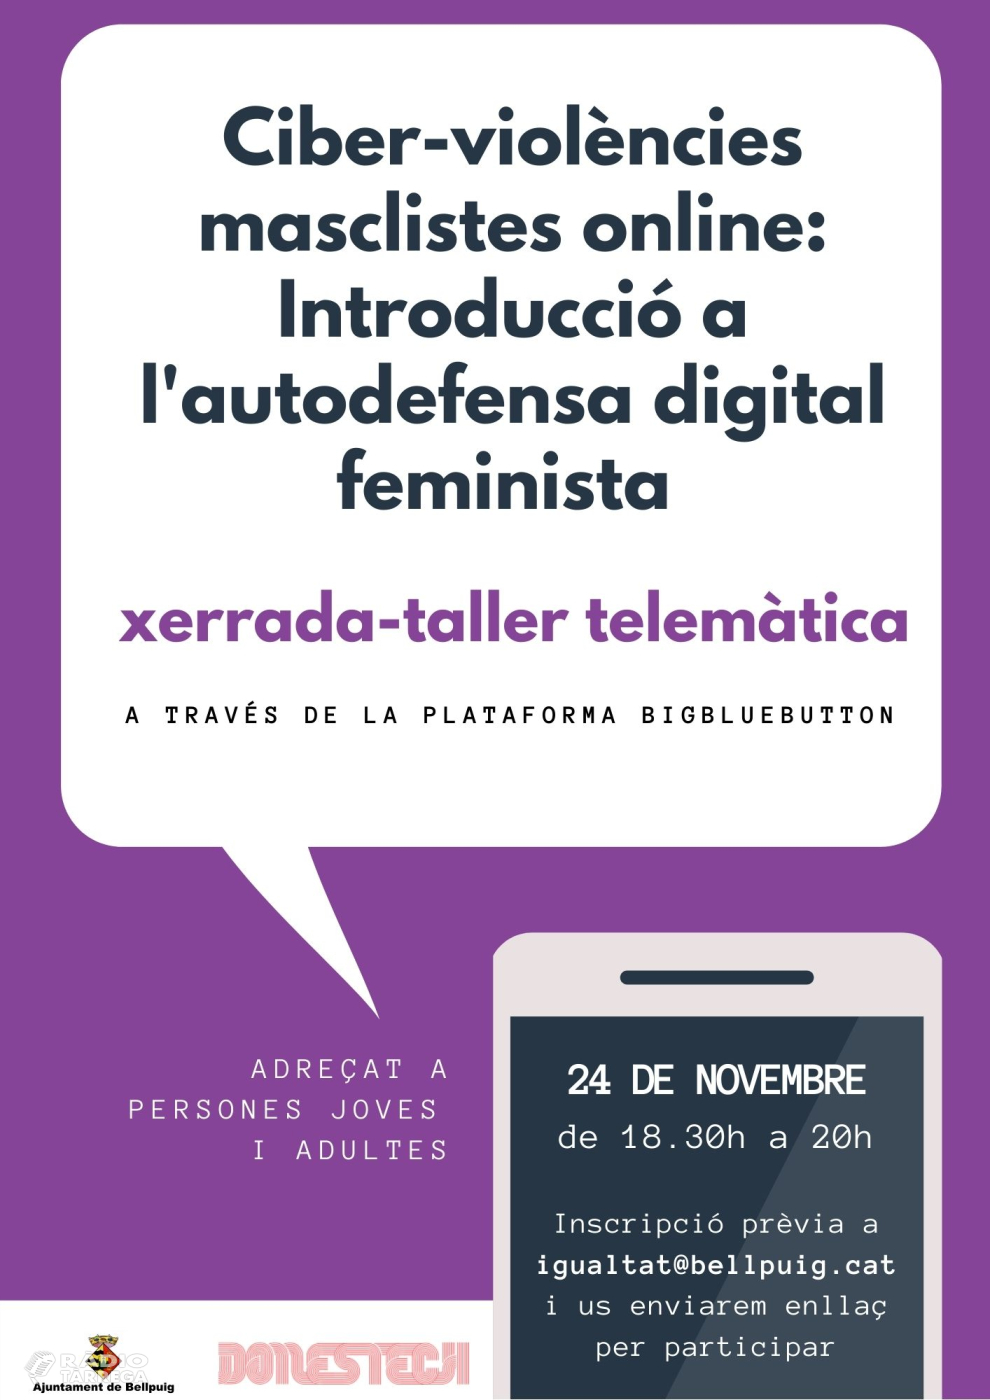 Les ciber-violències masclistes: introducció a l’autodefensa digital feminista en motiu del 15N a Bellpuig